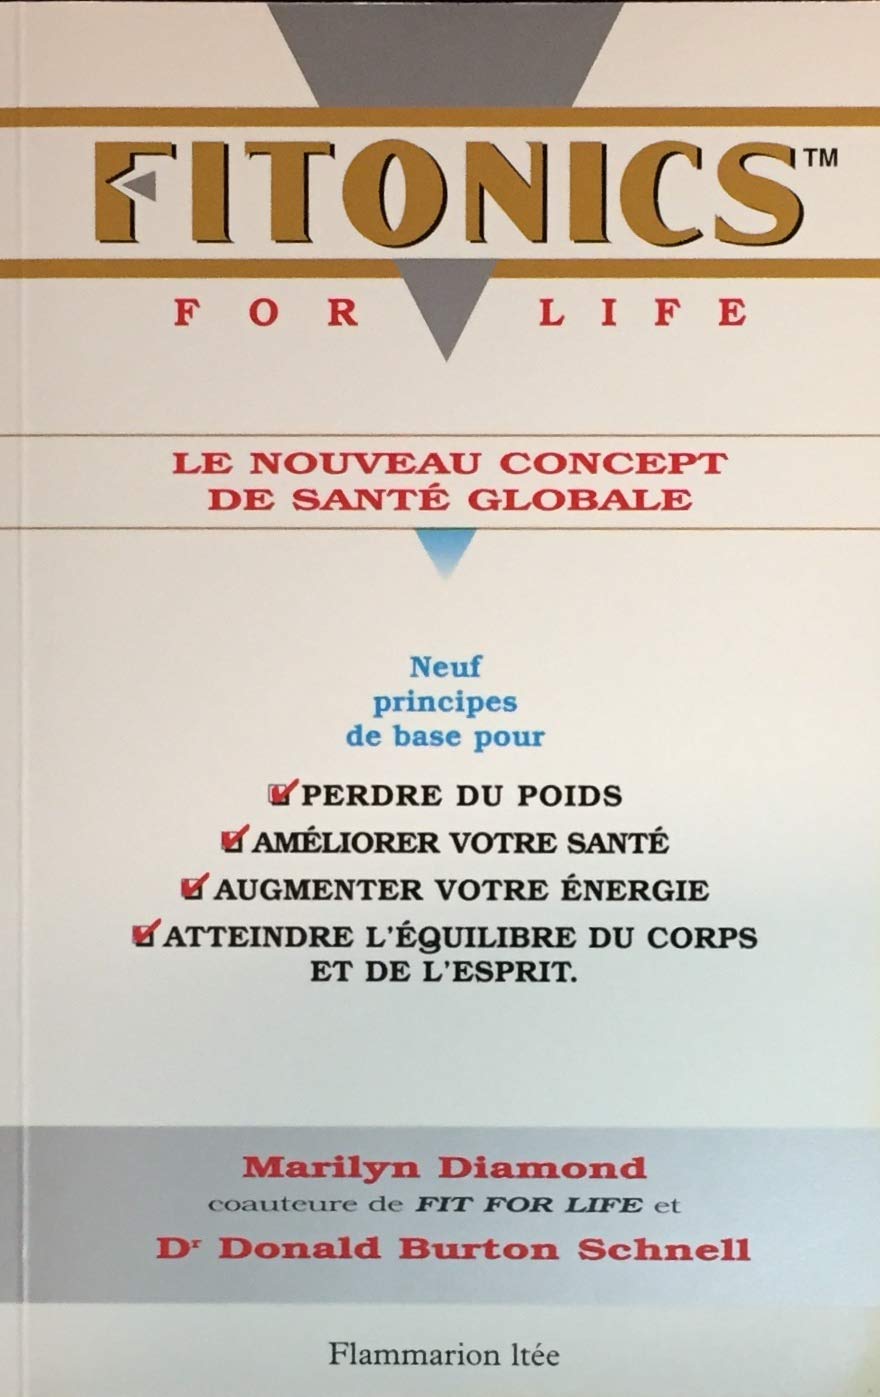 Livre ISBN 2890771741 Fitonics for life : le nouveau concept de santé globale (Marilyn Diamond)